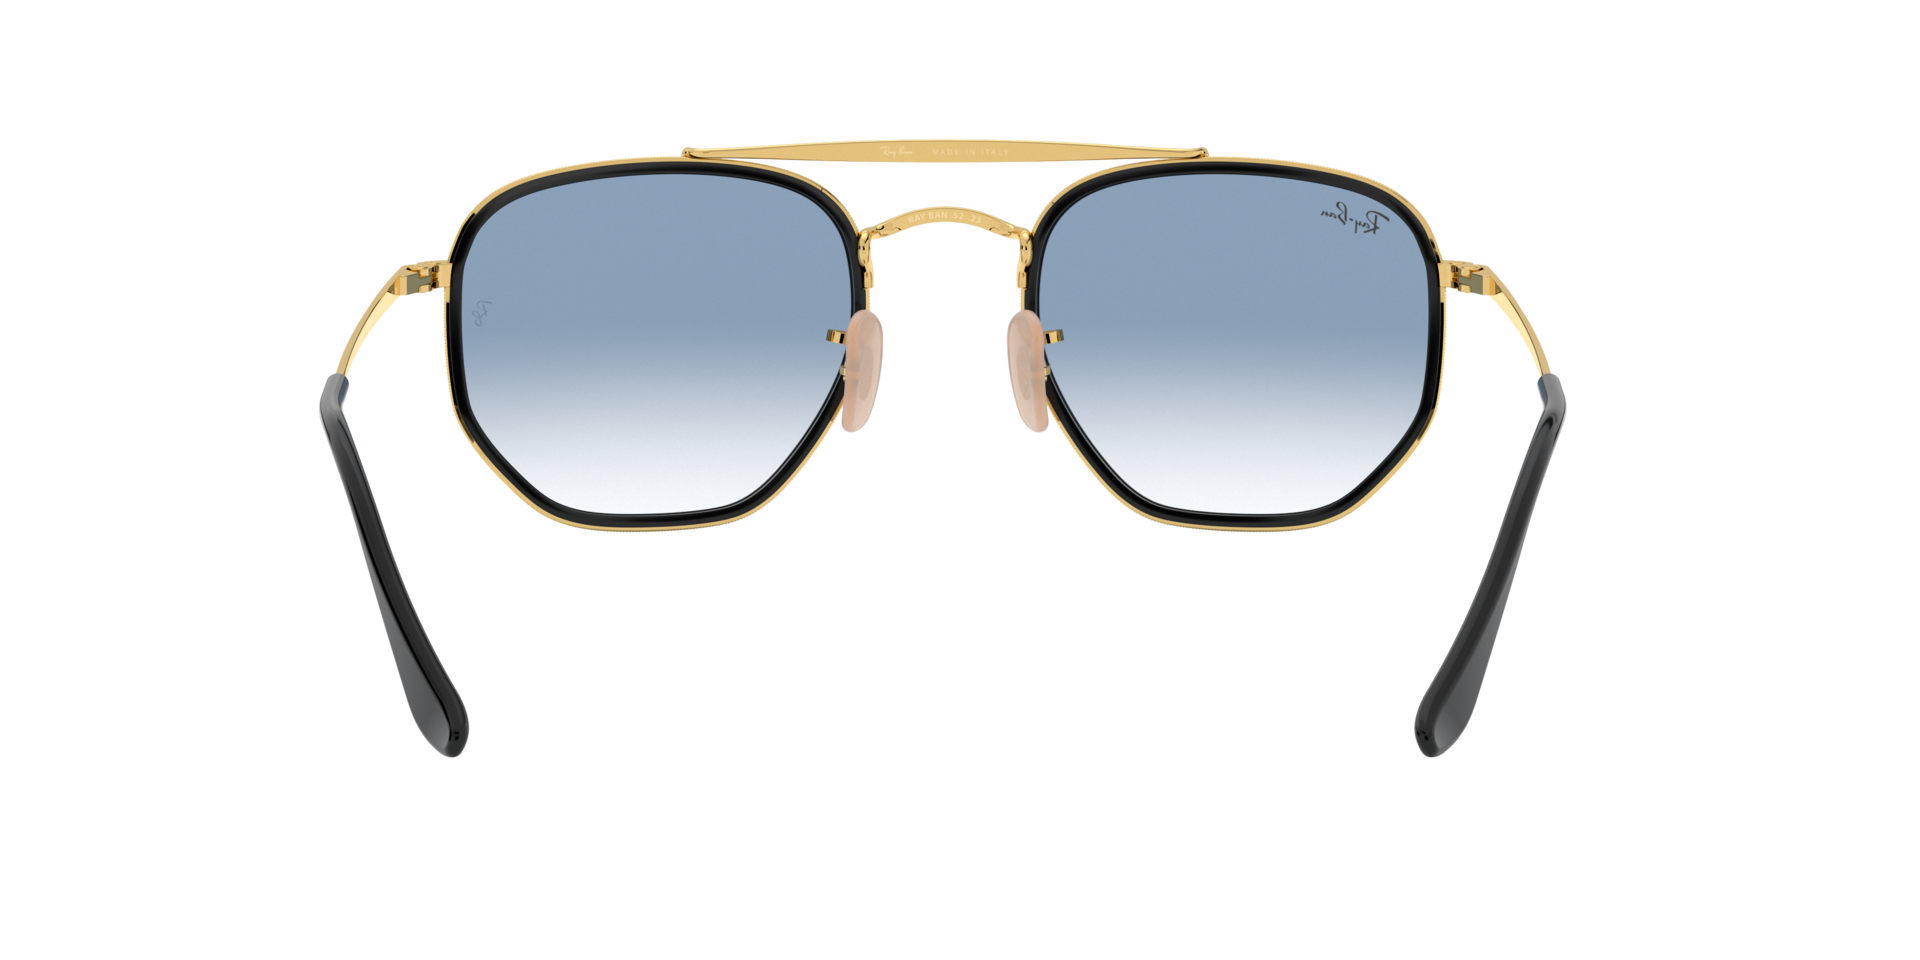 Buy Ray-Ban Marshal Ii Sunglasses Online.